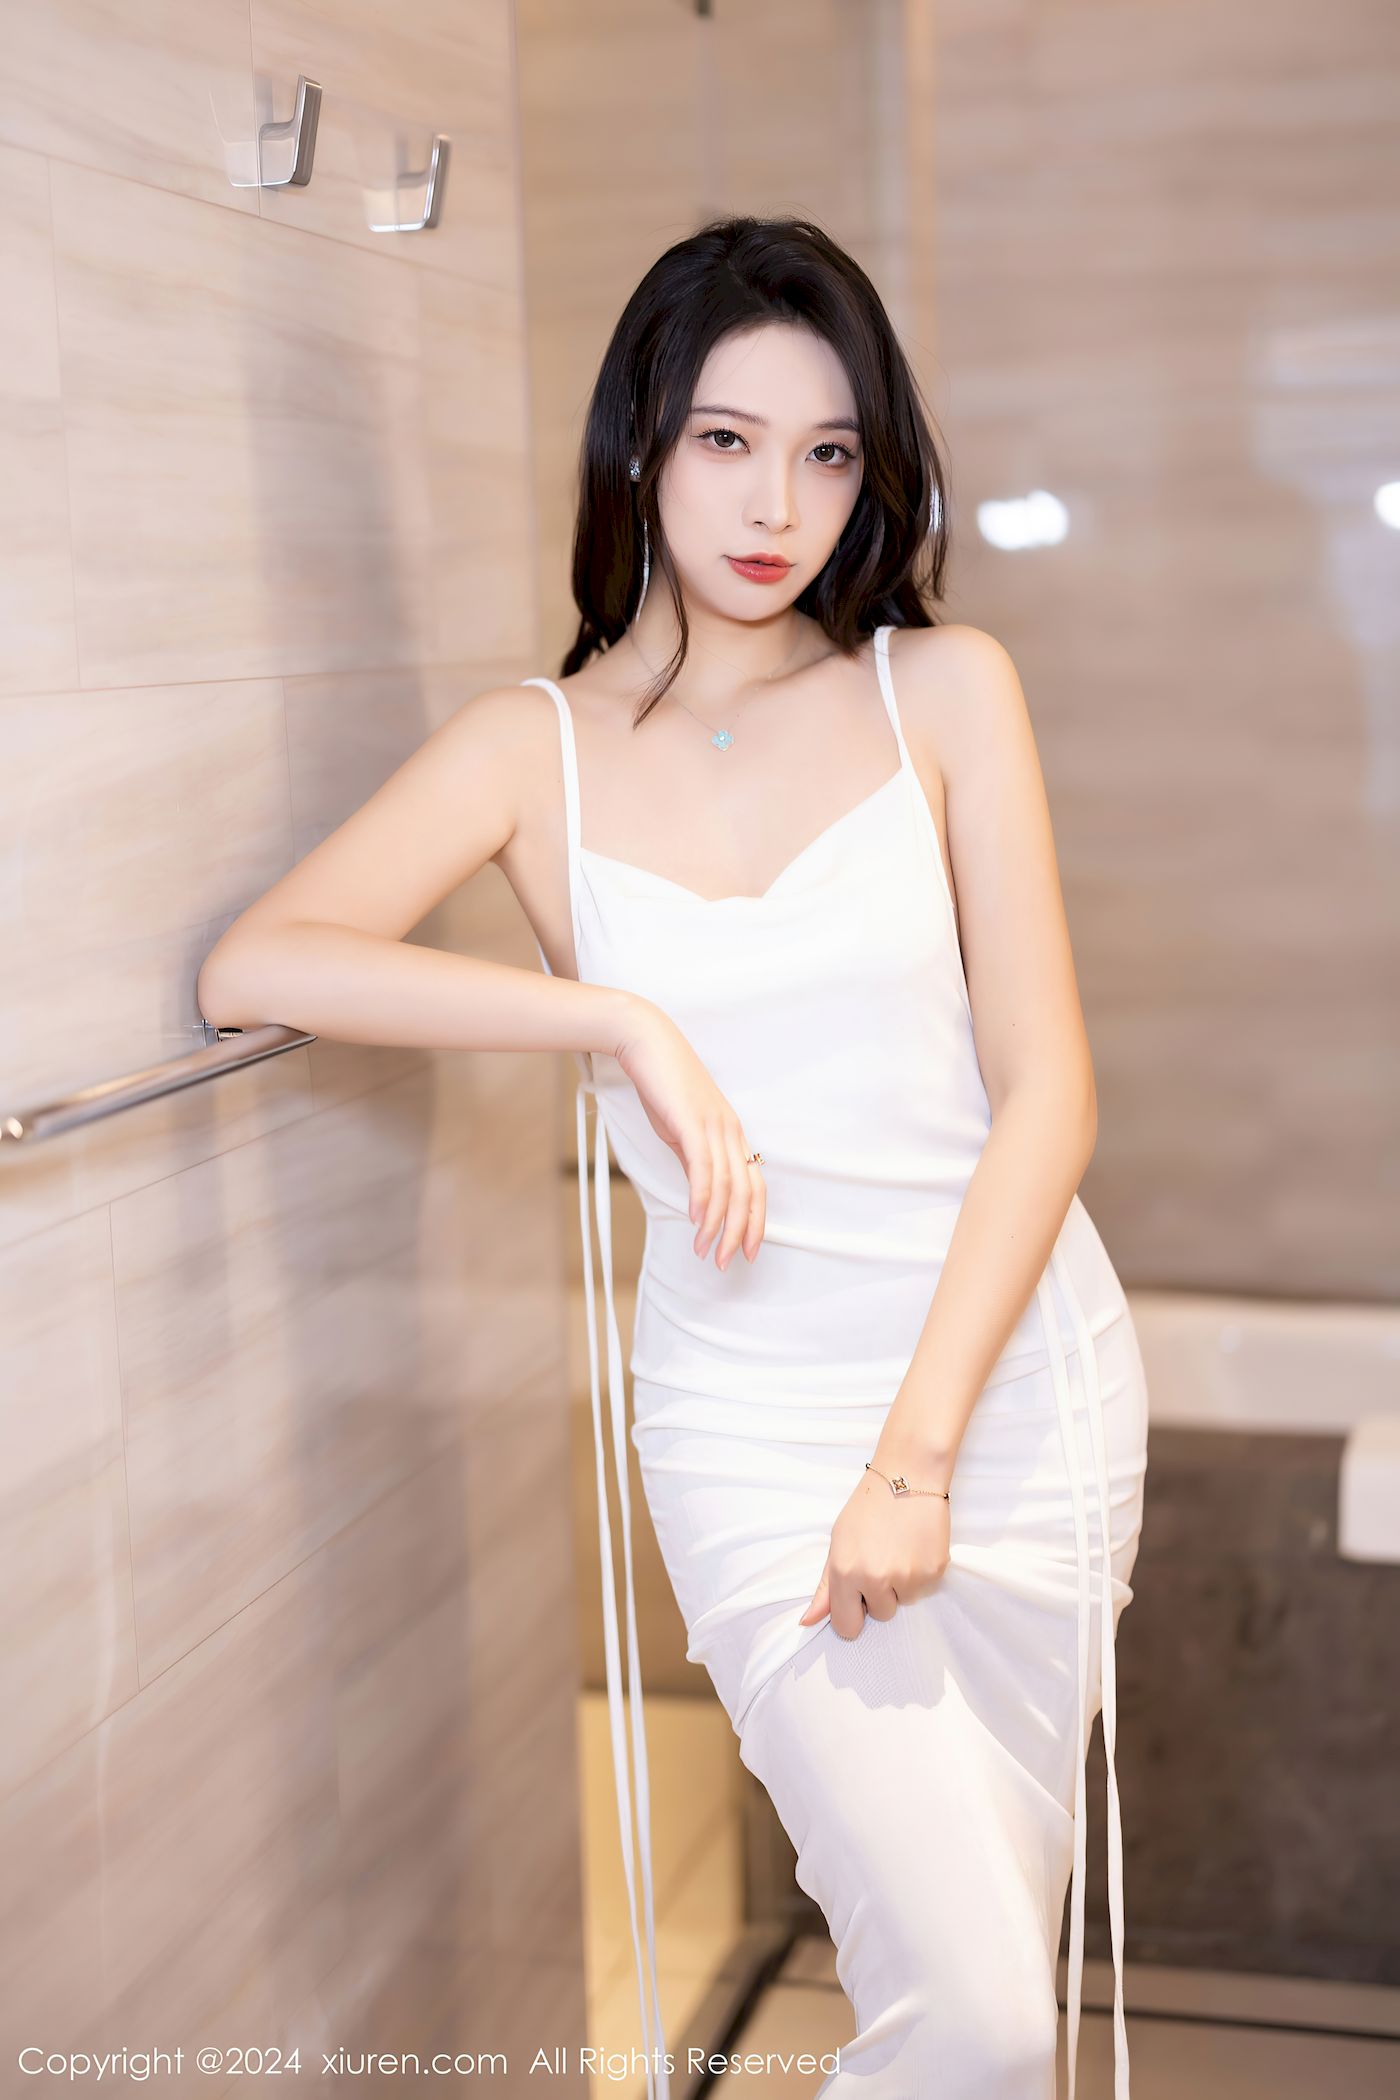 郑颖姗Bev白色长裙搭配高挑身材性感写真